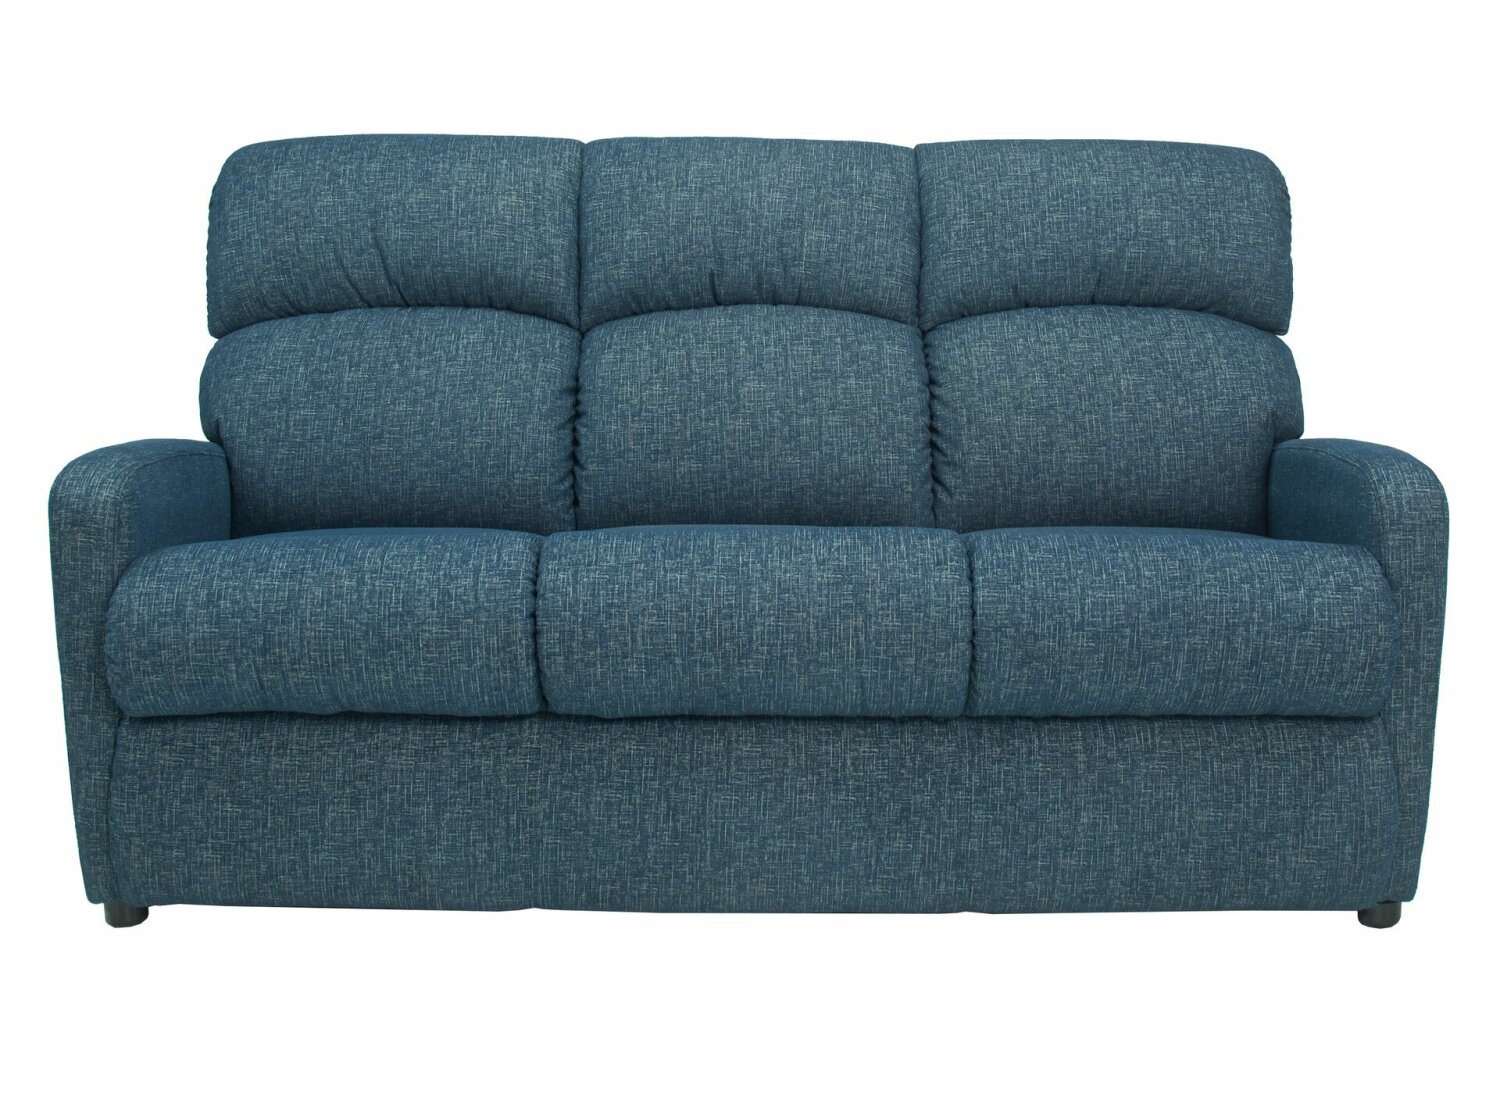 Mira La-Z-Boy 3 Seater Sofa